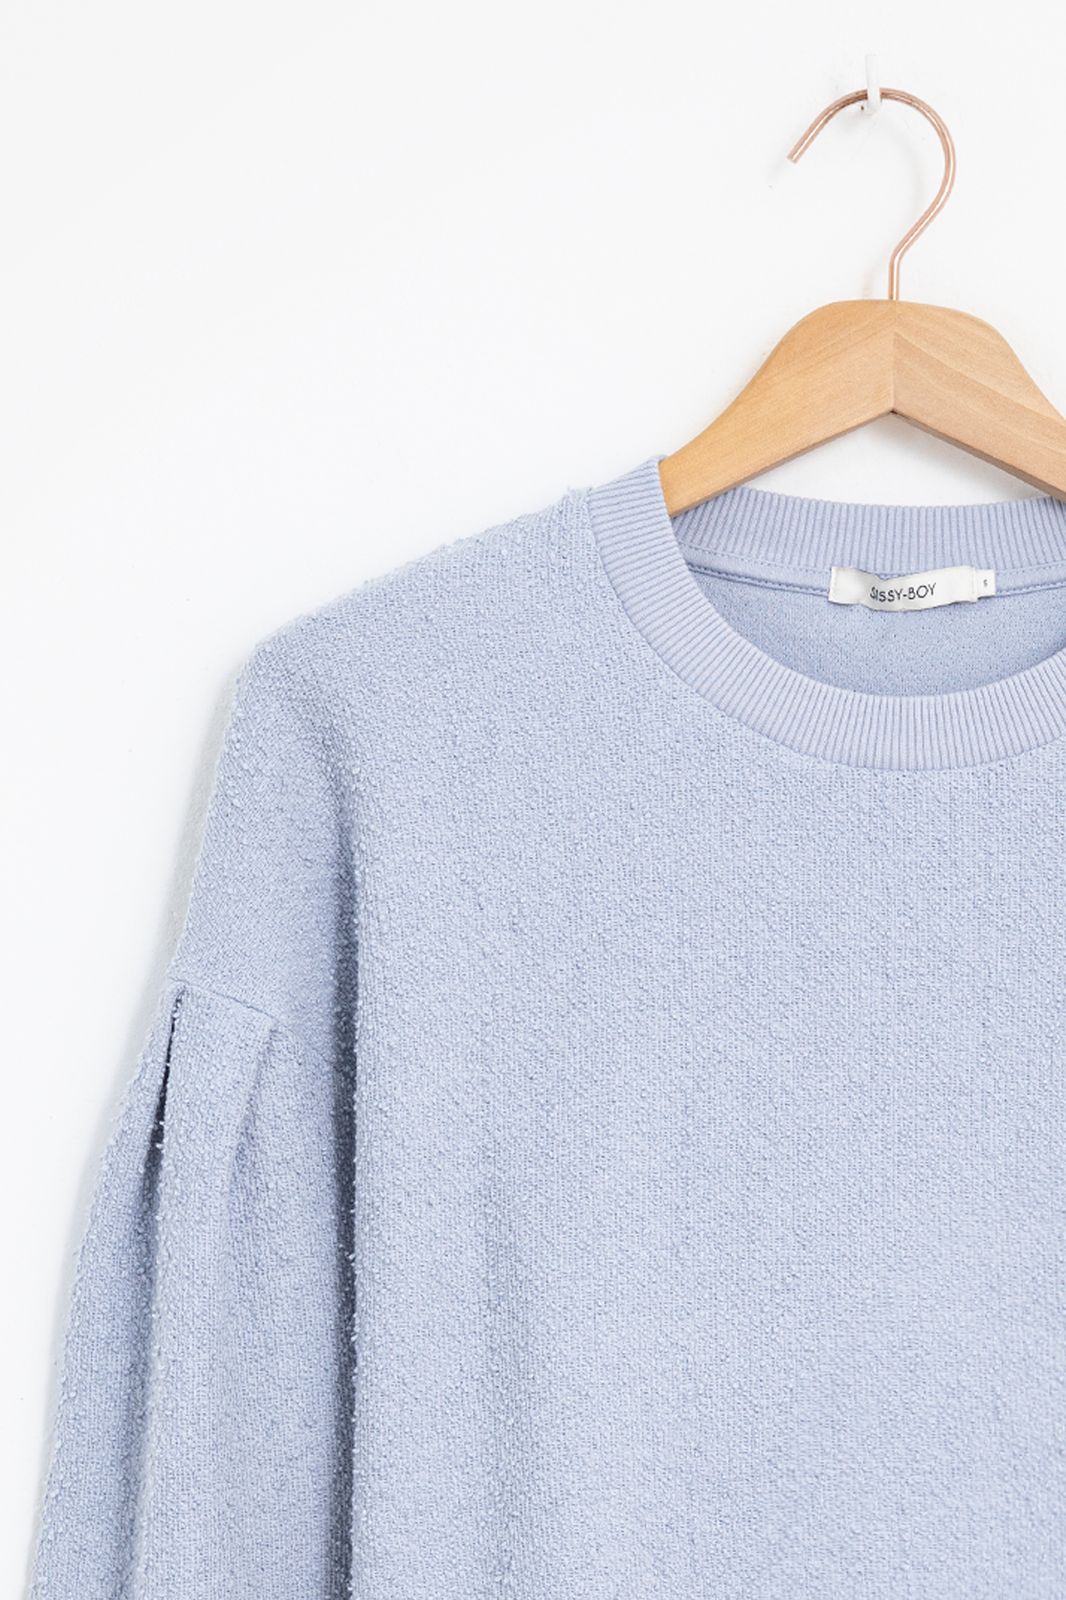 Sweater mit Puffärmeln - hellblau